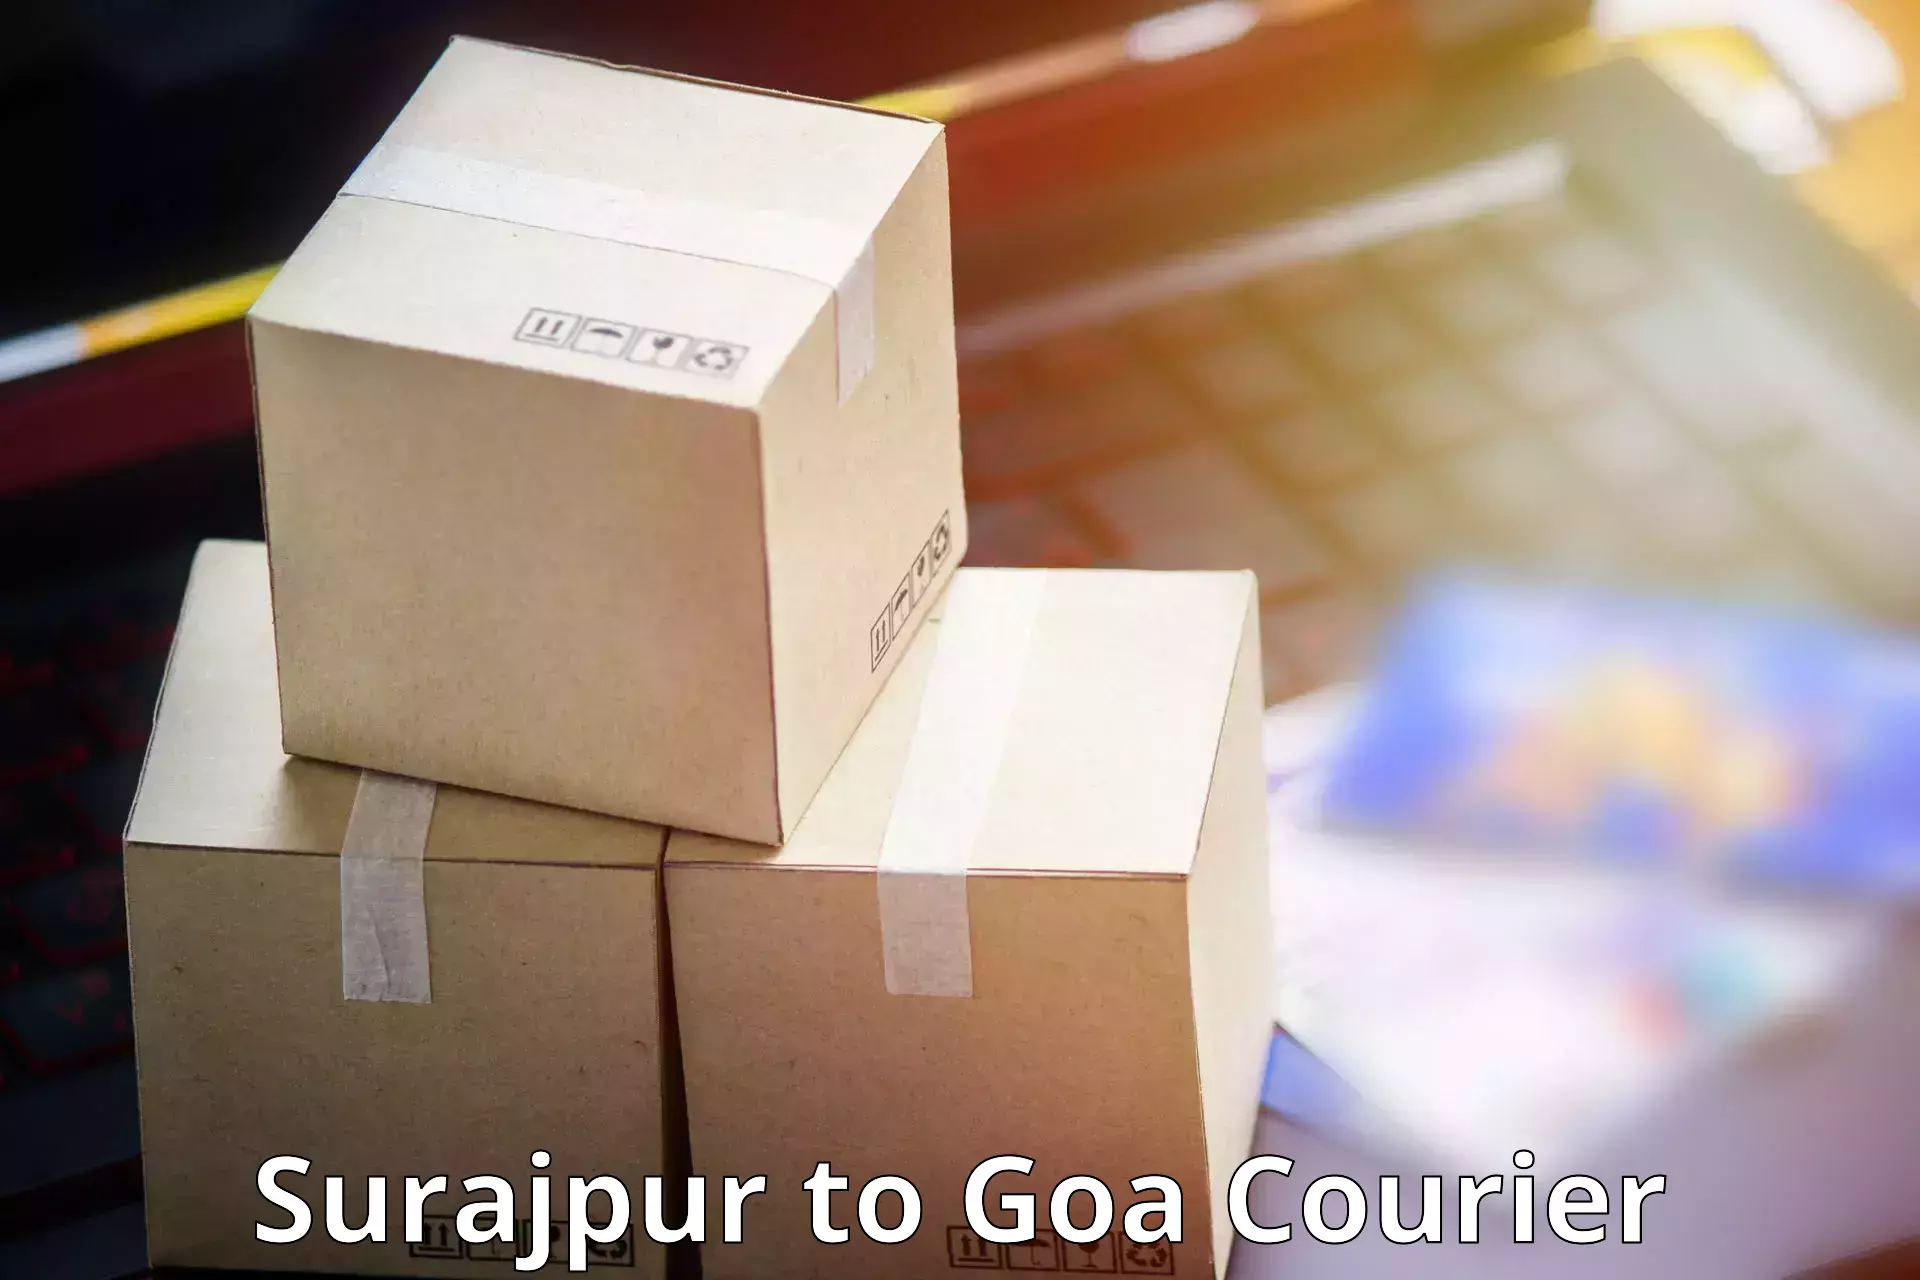 Premium delivery services Surajpur to Ponda